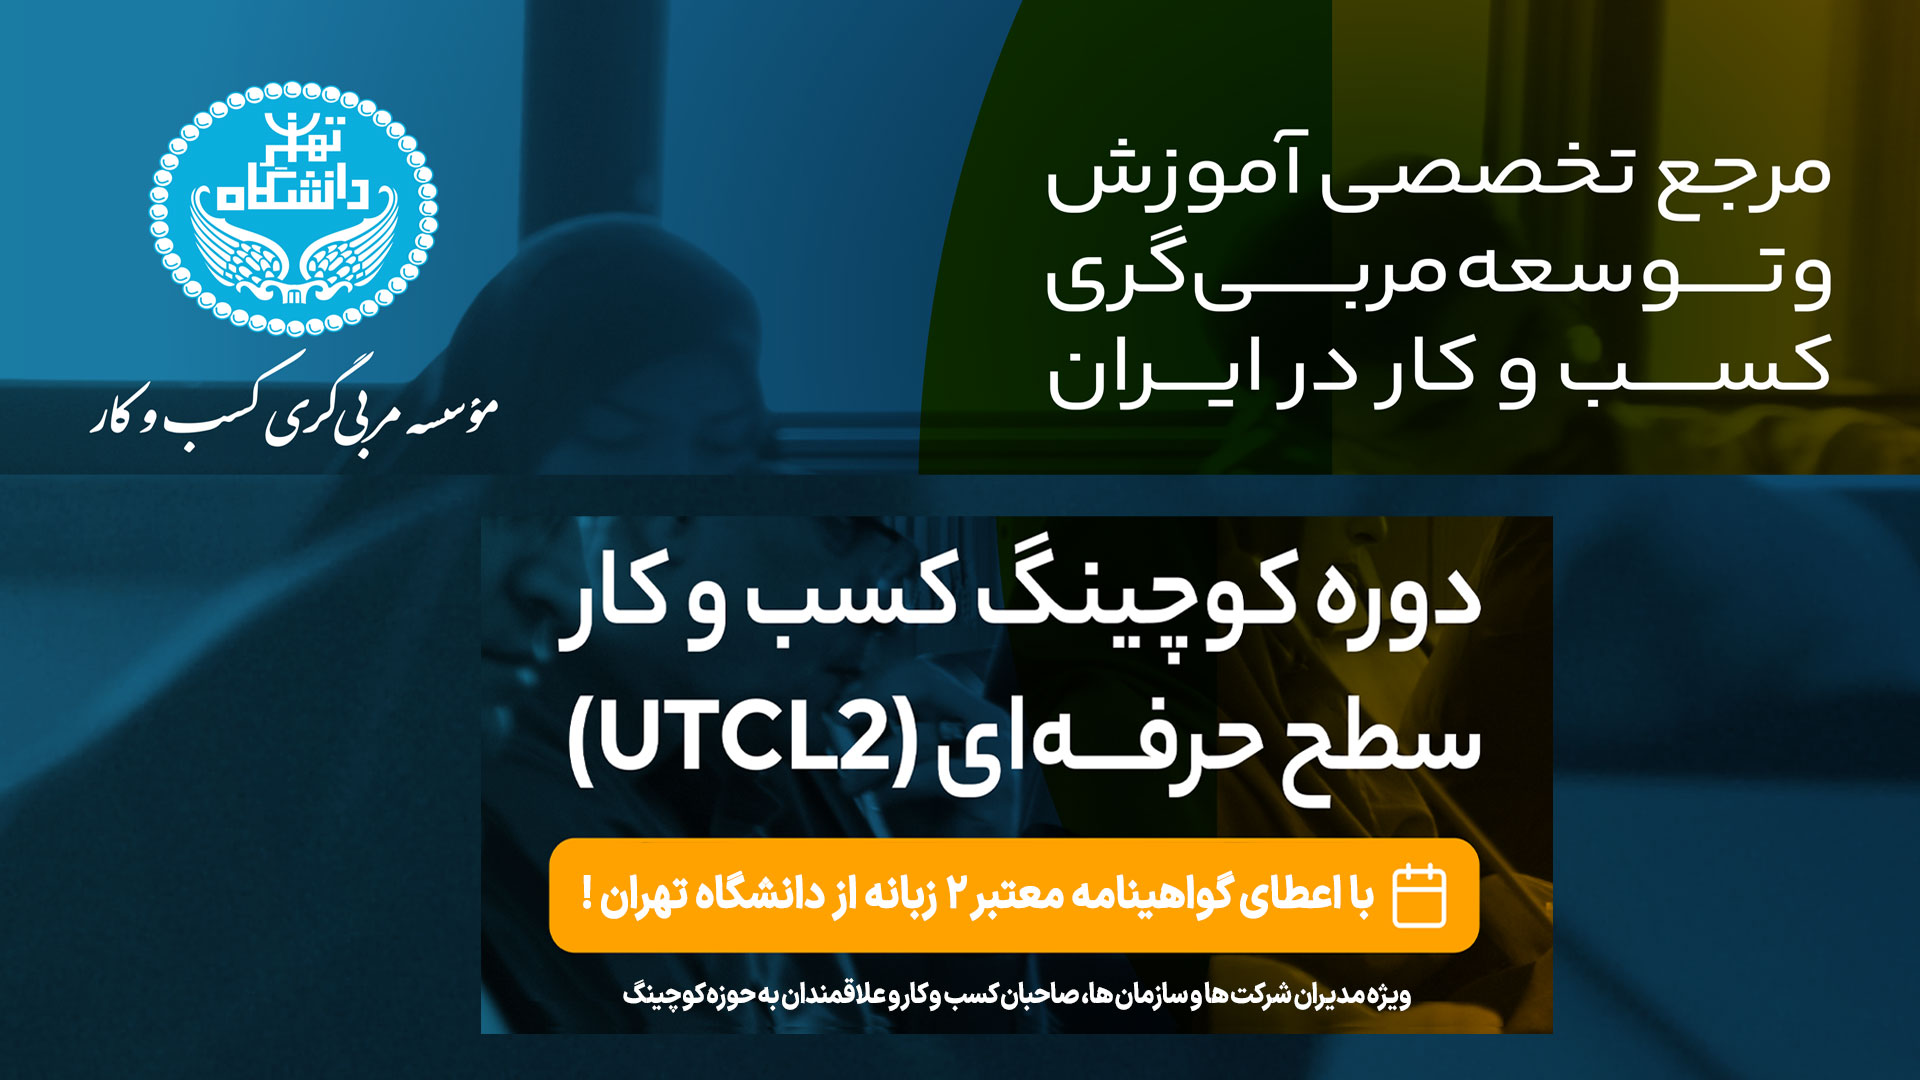 کوچینگ حرفه ای کسب و کار دانشگاه تهران (UTCL2)